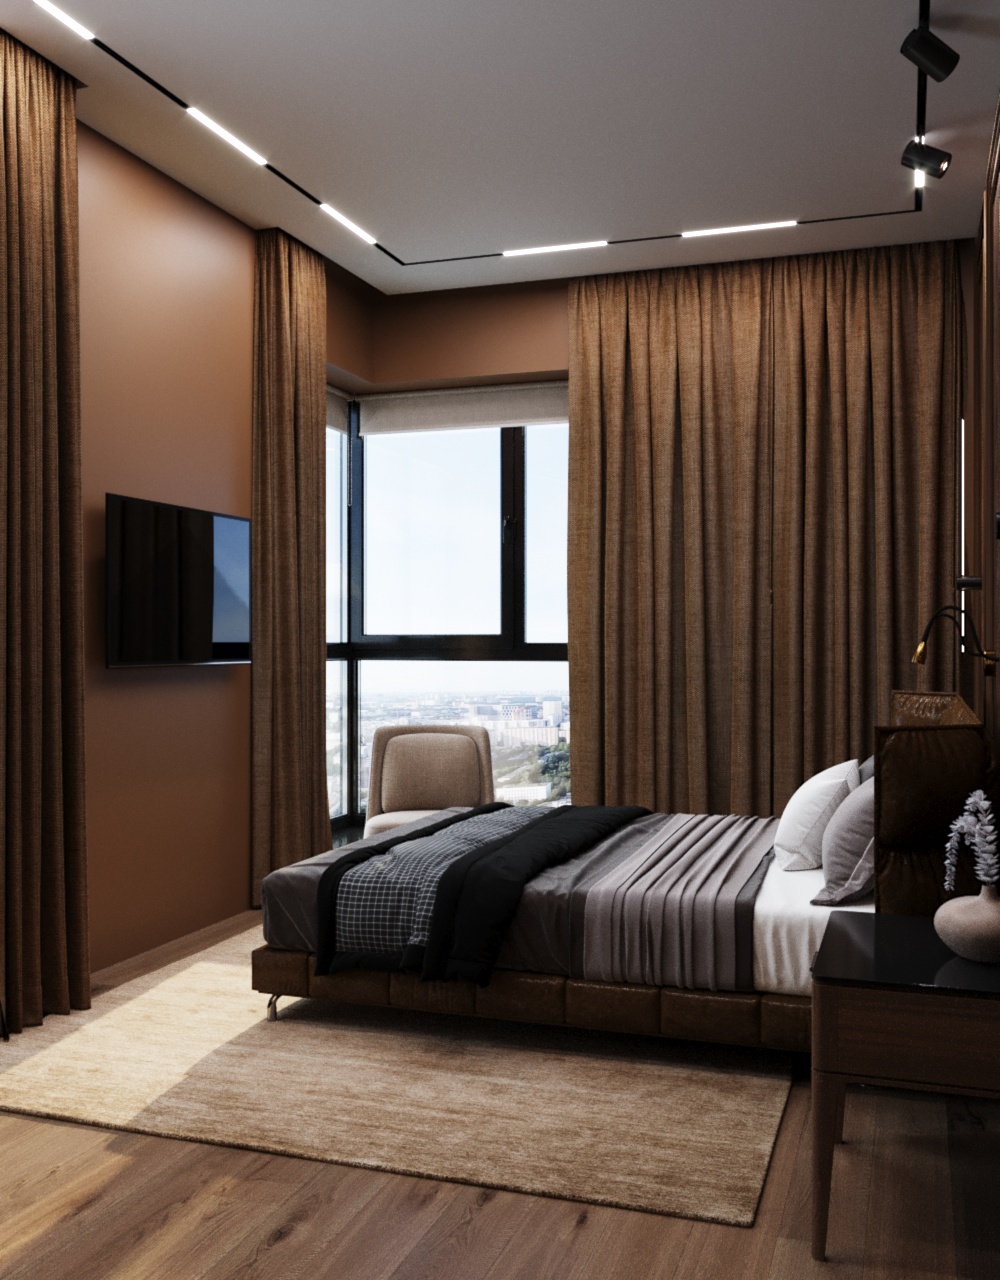 Интерьер спальни с угловым окном, рейками с подсветкой и подсветкой светодиодной